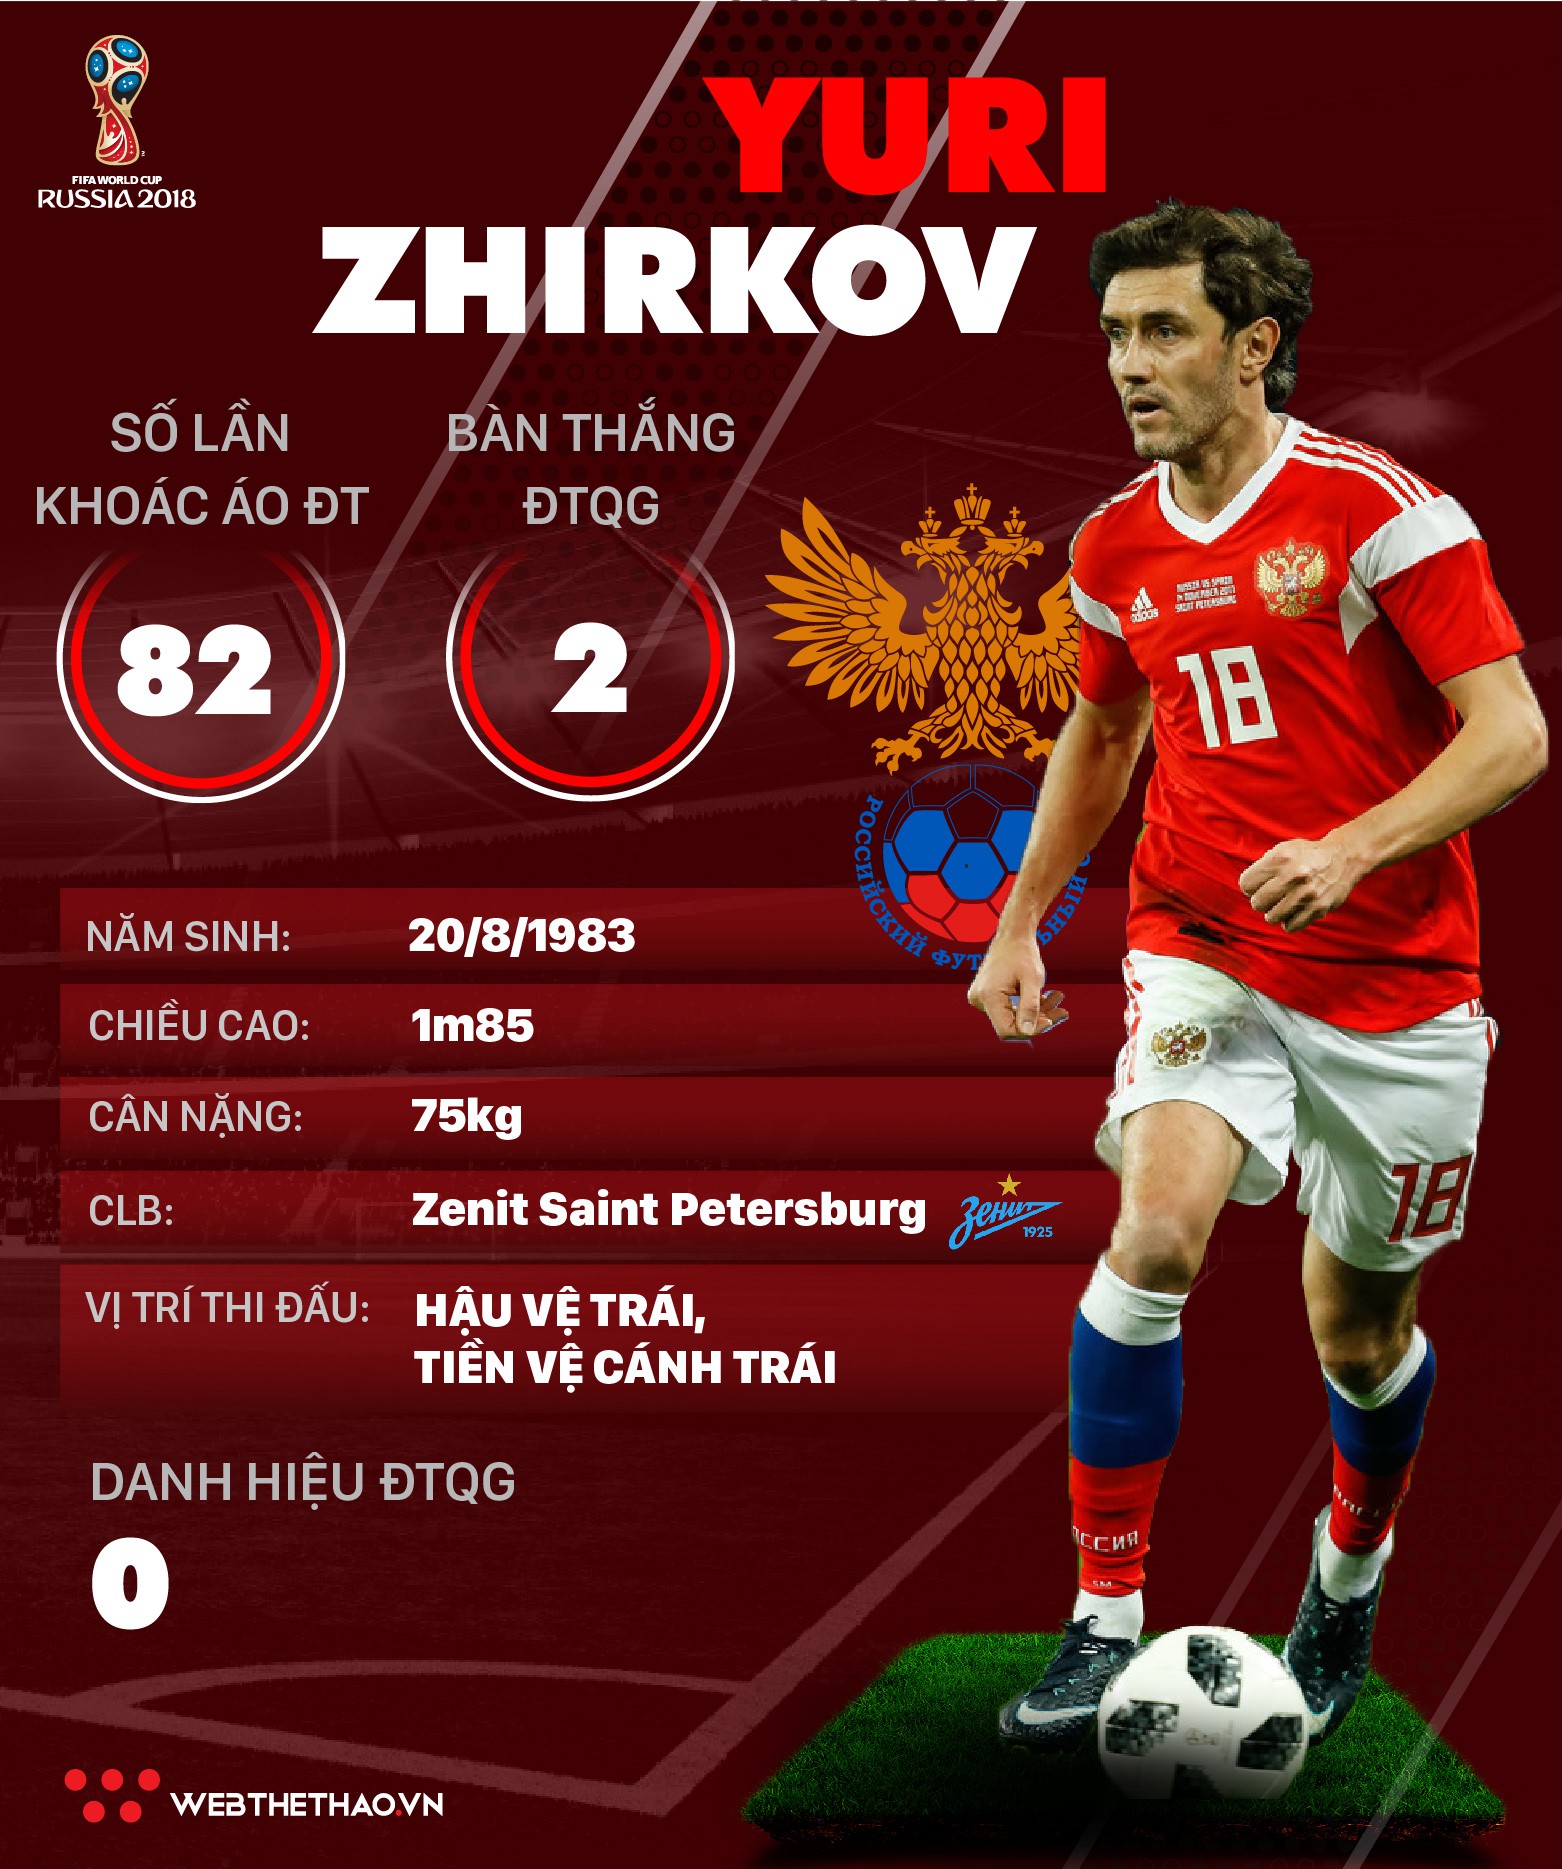 Thông tin cầu thủ Yuri Zhirkov của ĐT Nga dự World Cup 2018 - Ảnh 1.